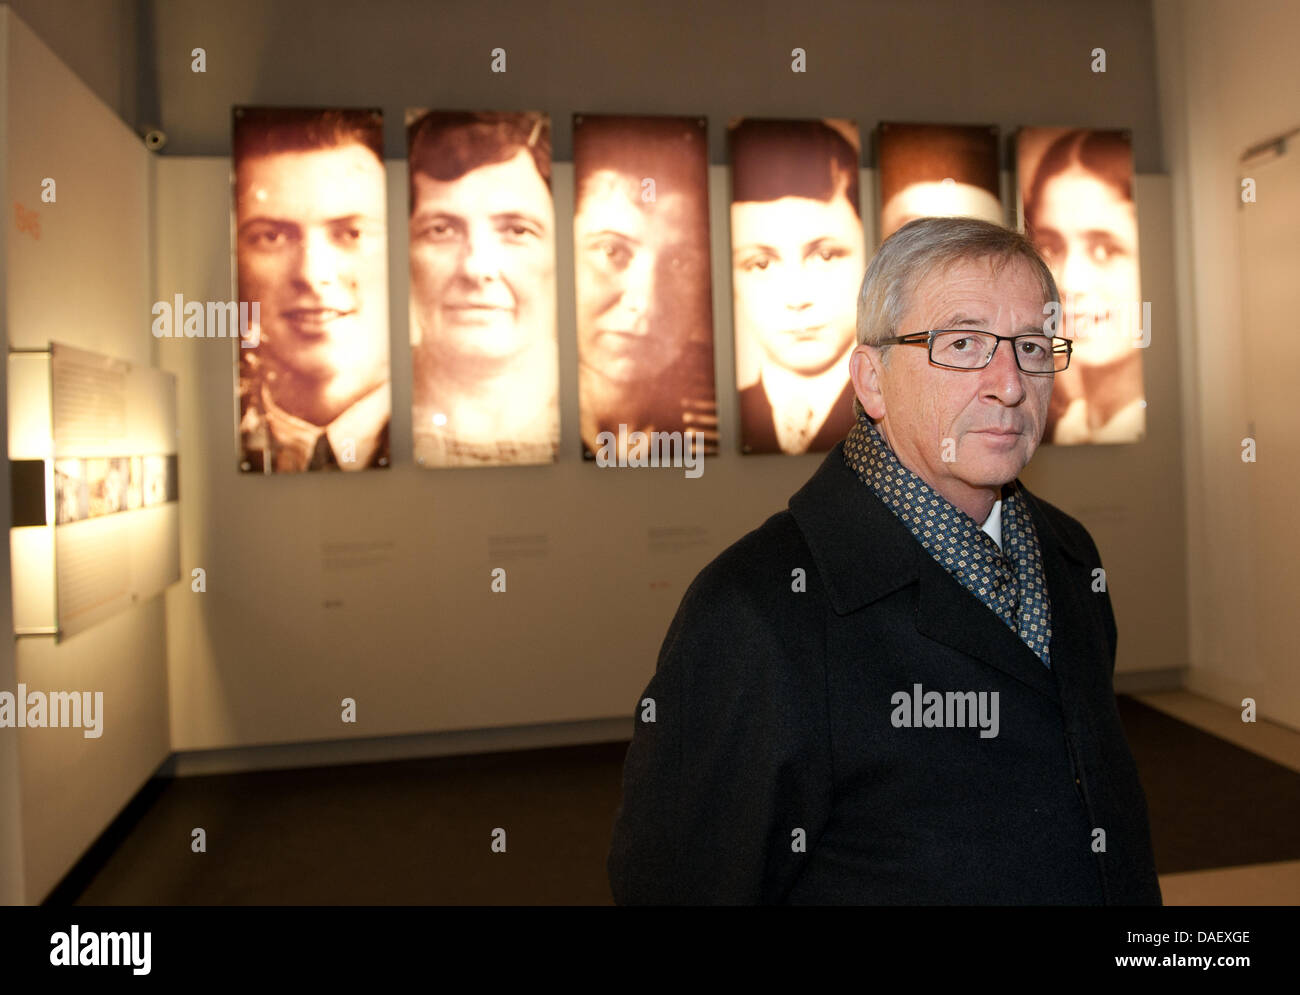 Jean Claude Juncker, Primo ministro del Lussemburgo, visita al Memoriale dell Olocausto a Berlino, Germania, 17 novembre 2011. Più tardi ha conferito il "Premio per il coraggio civile contro il radicalismo Right-Wing, di antisemitismo e di razzismo" di A. Schroeter, Sindaco di Jena. Foto: Joerg Carstensen Foto Stock